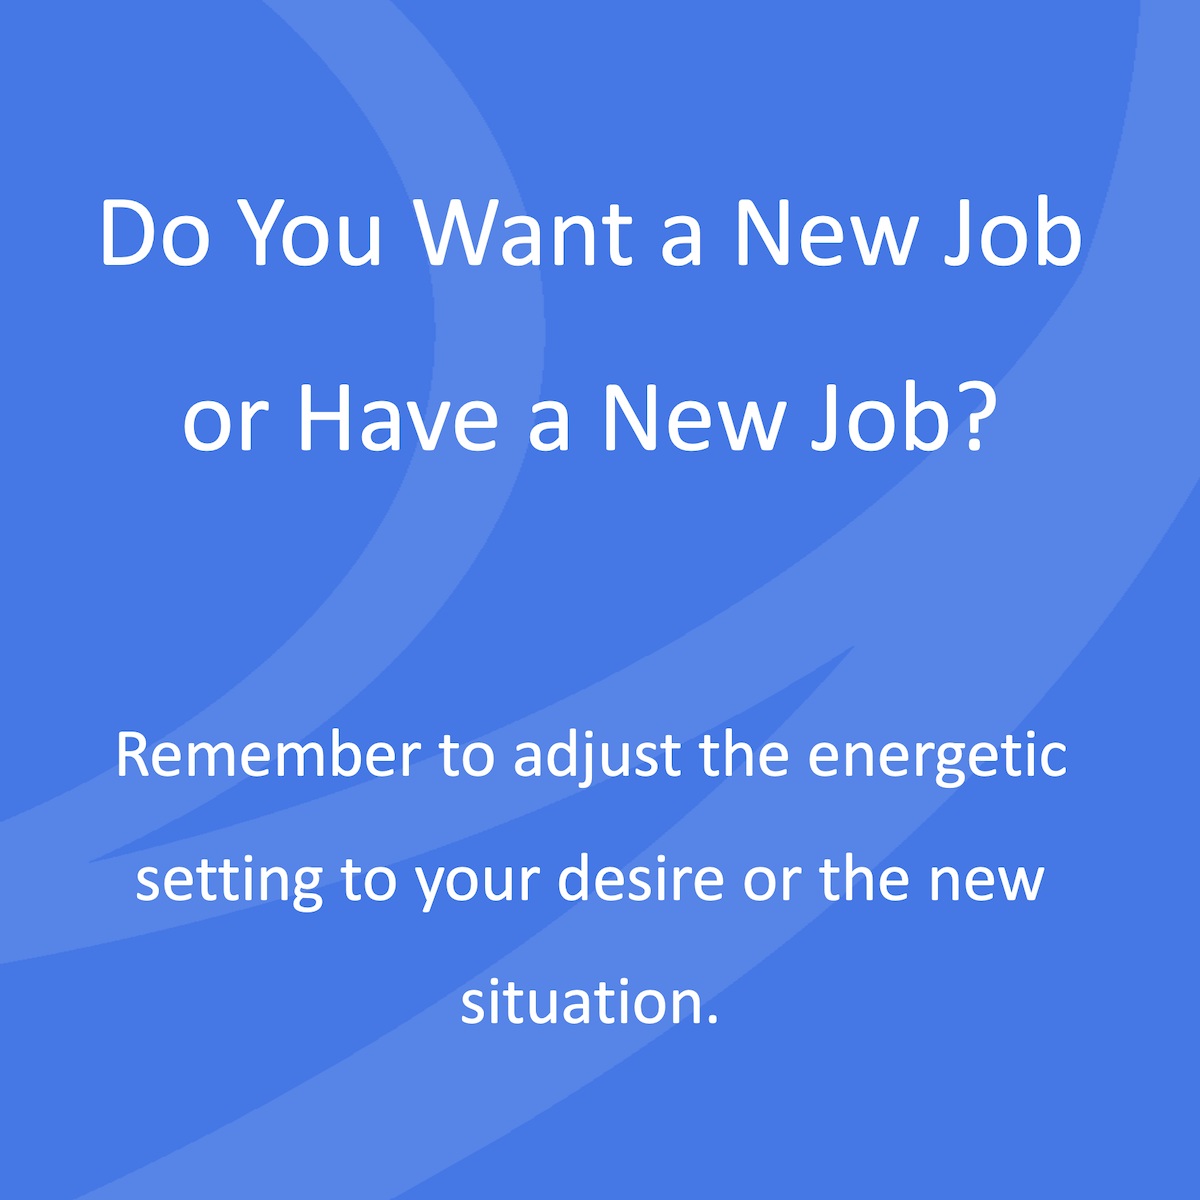 Wil je of heb je een nieuwe baan? Vergeet niet de energetische setting aan te passen op je wens of op de nieuwe situatie.